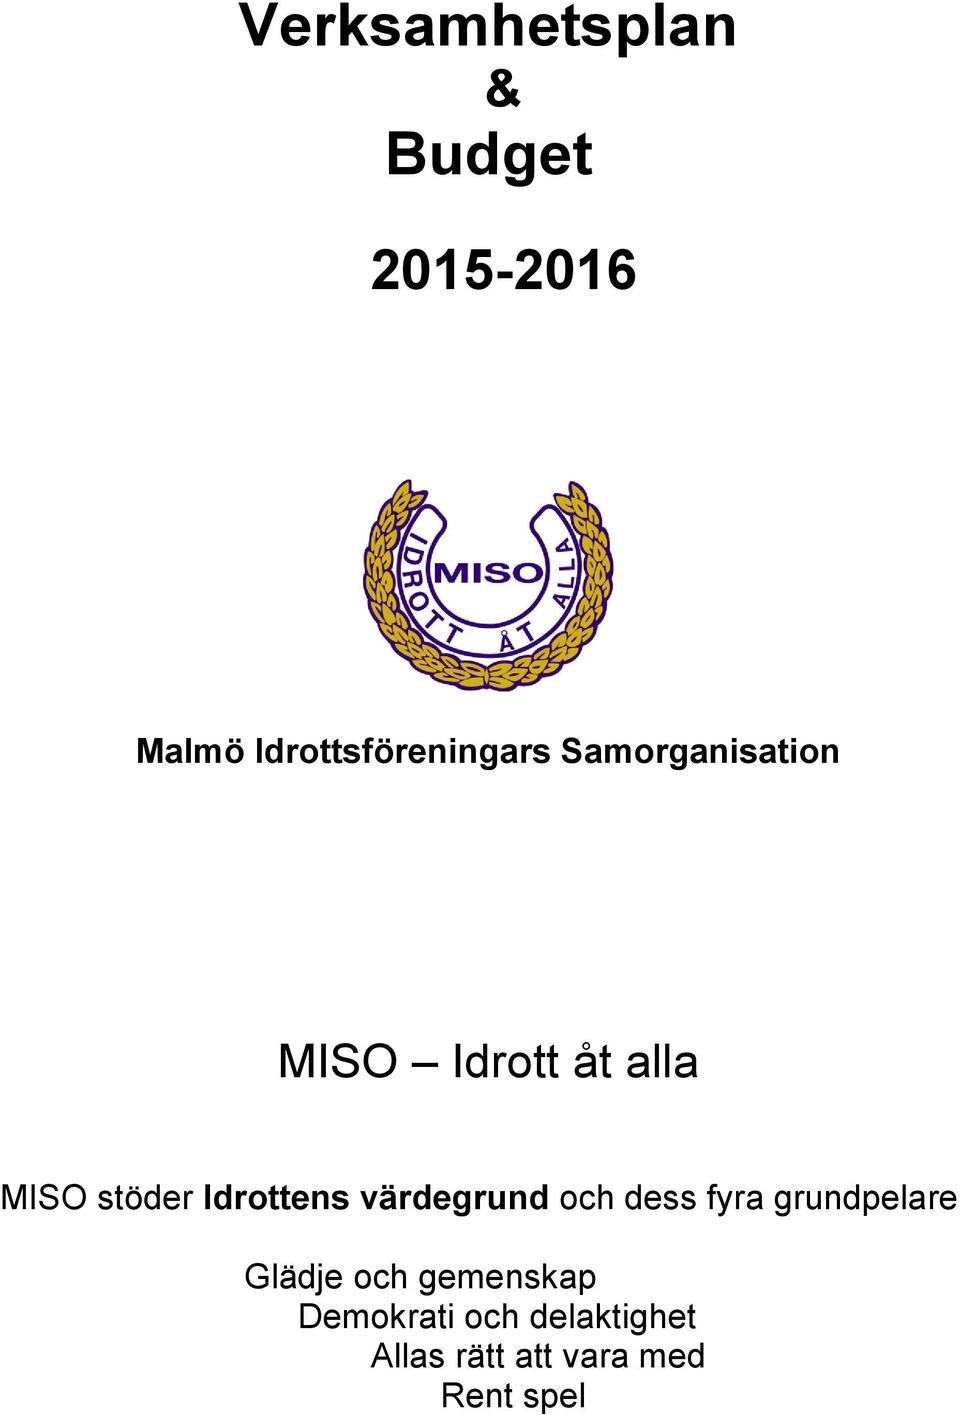 MISO stöder Idrottens värdegrund och dess fyra grundpelare